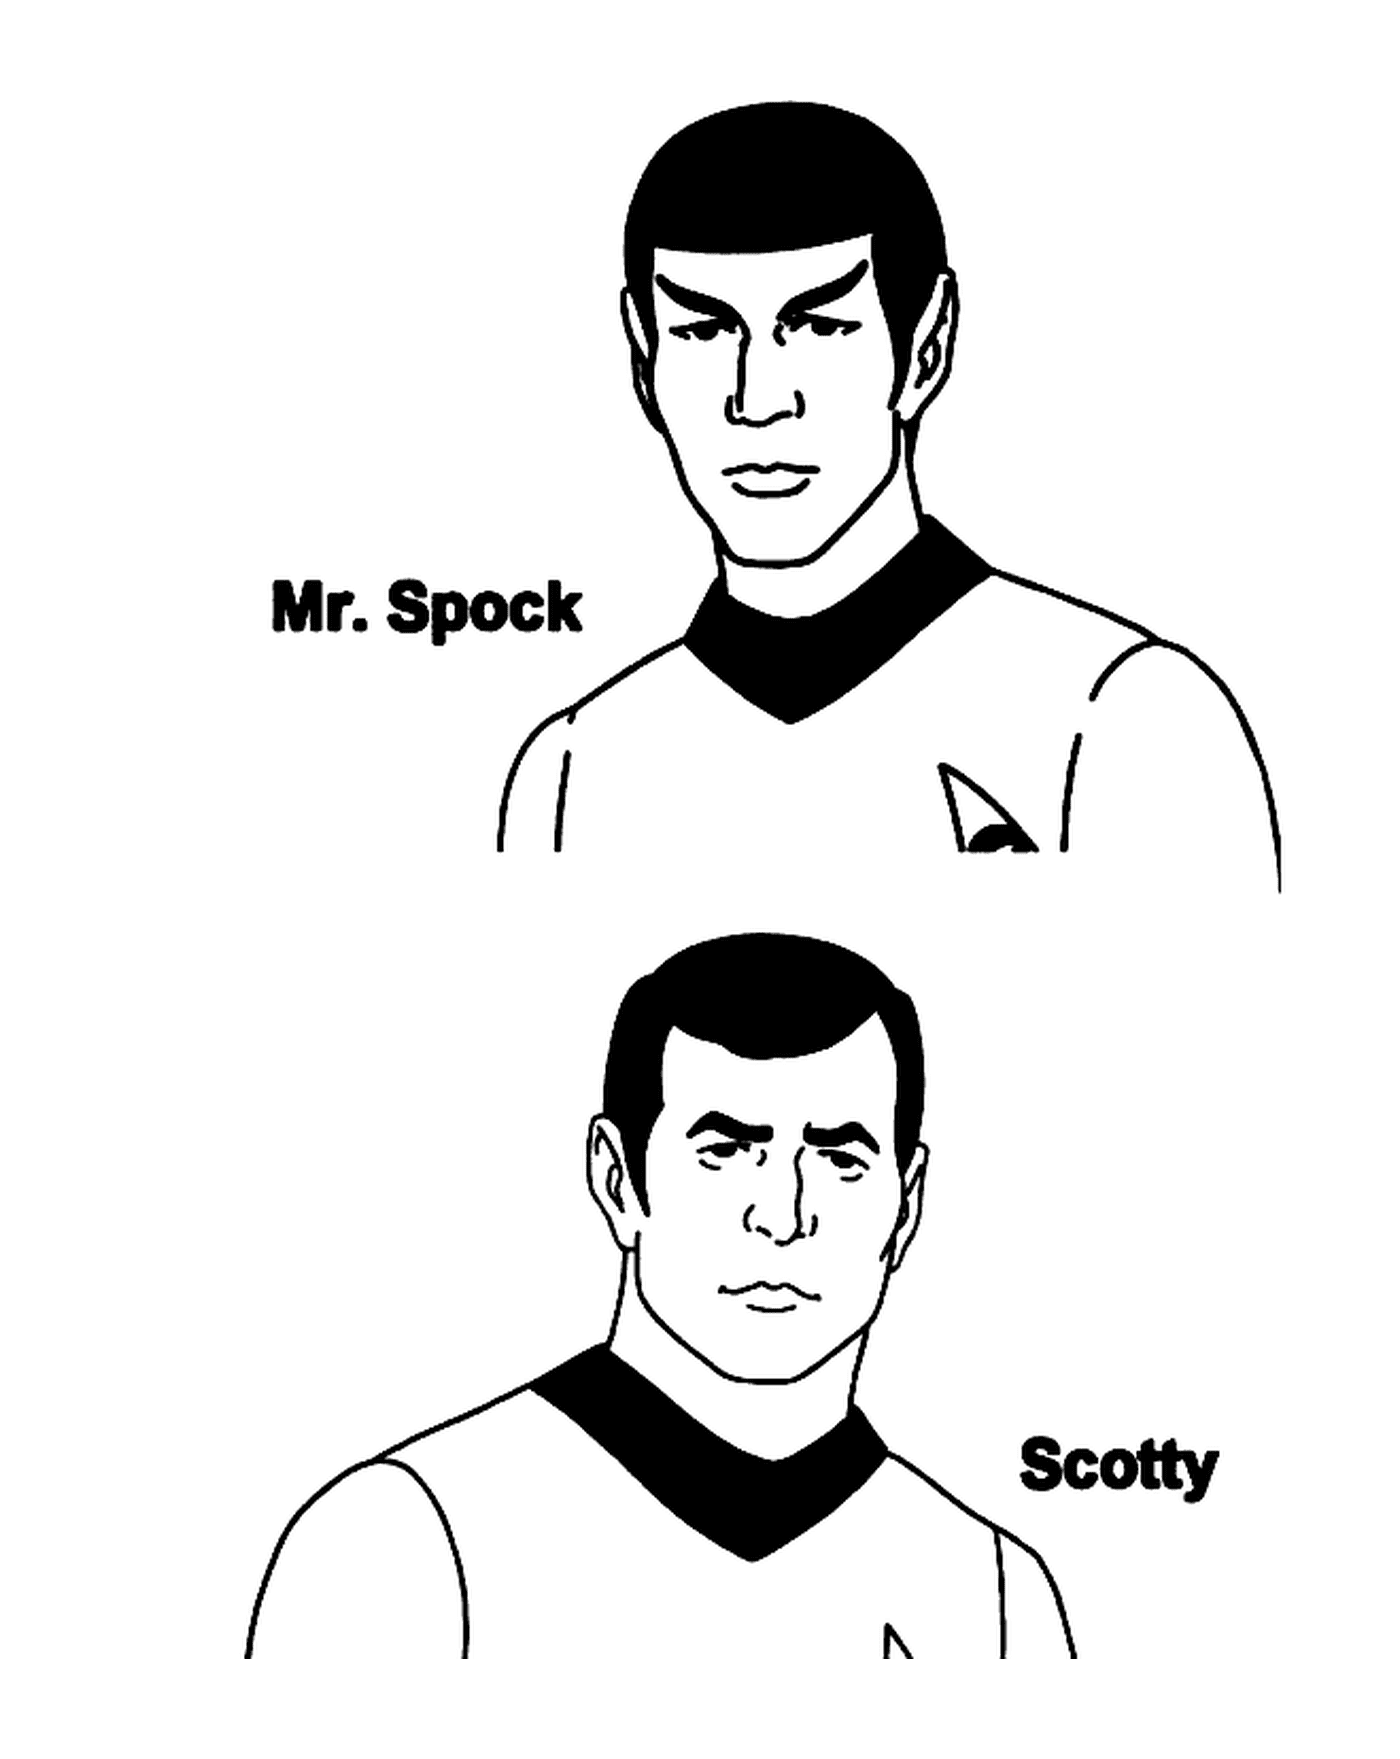  श्री स्पॉक और स्कॉटी द स्टार ट्रेके 